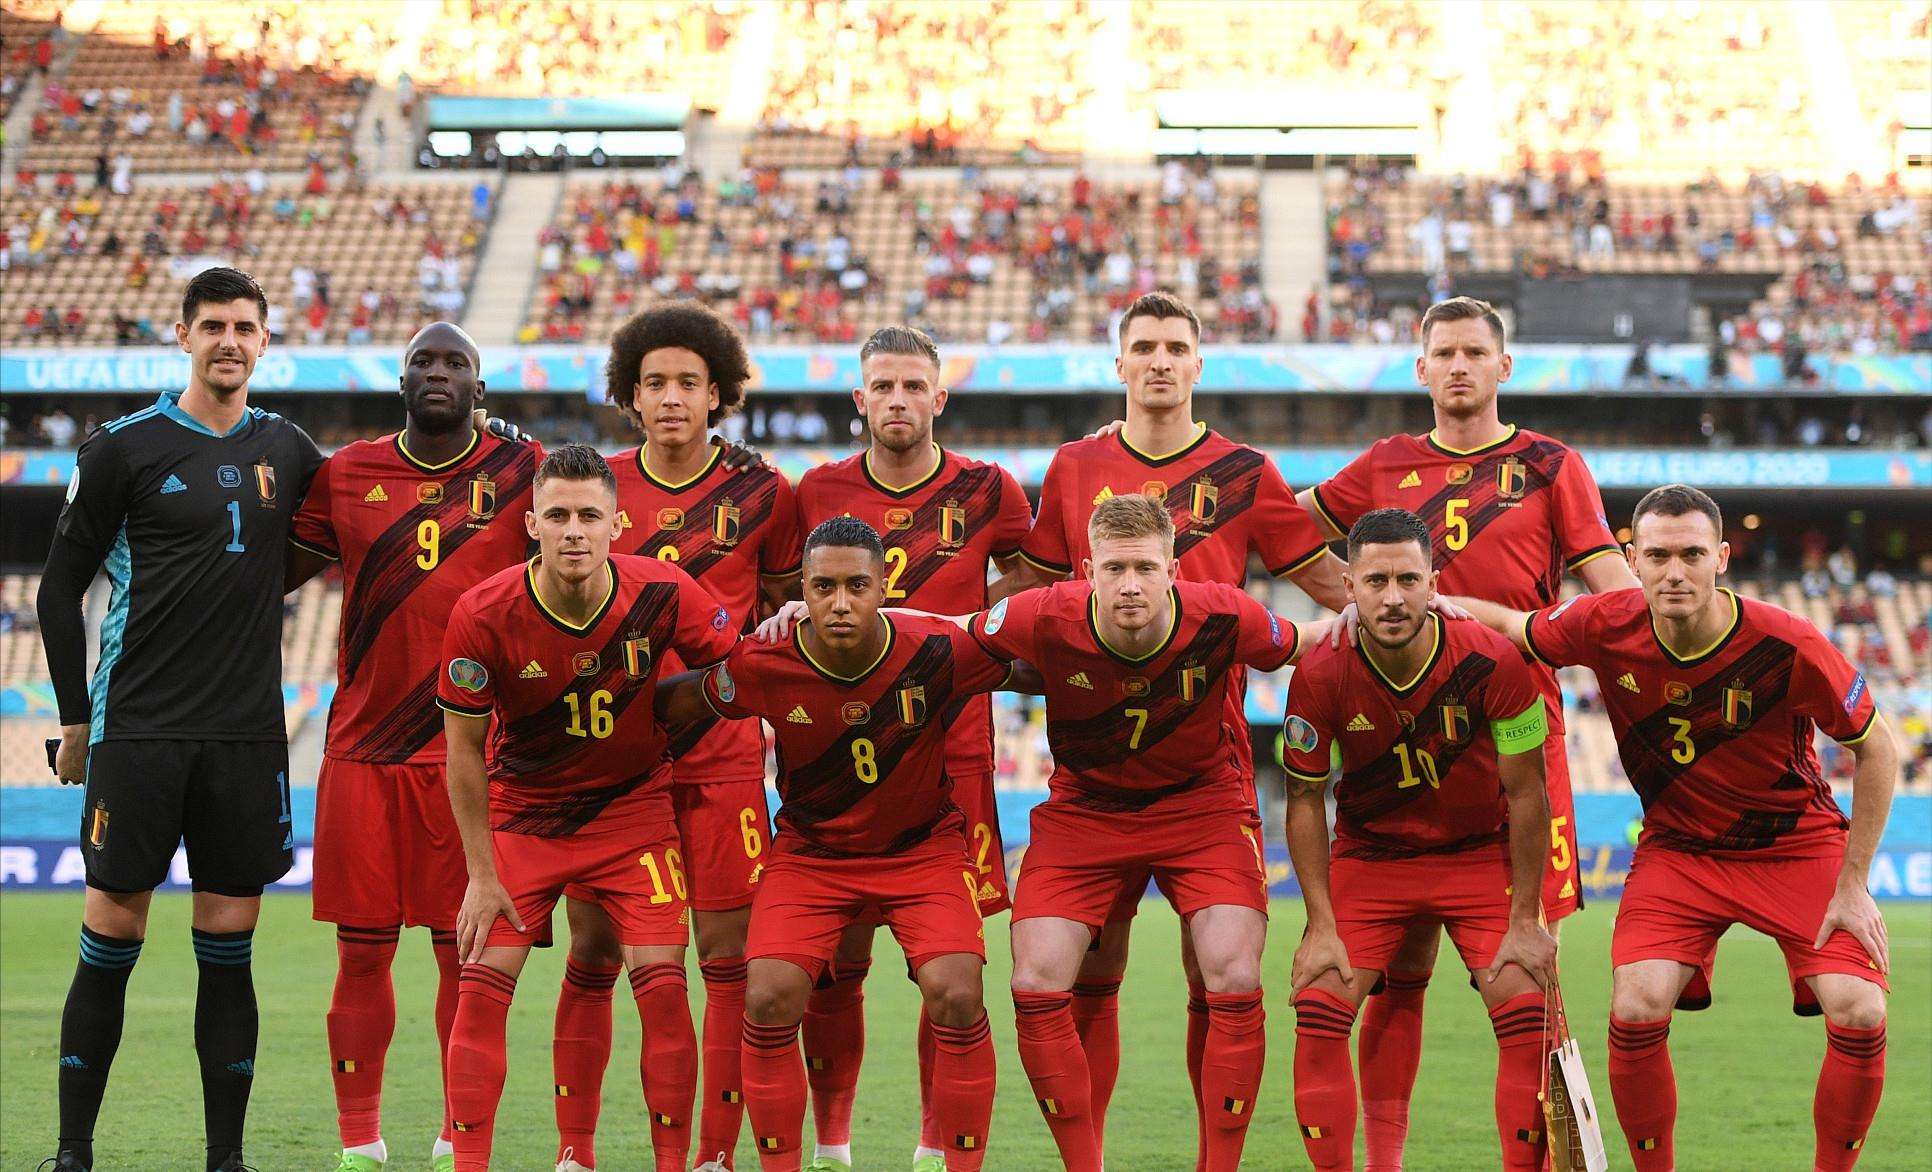 比利时国家联赛名单 比利时国家足球队队员名单